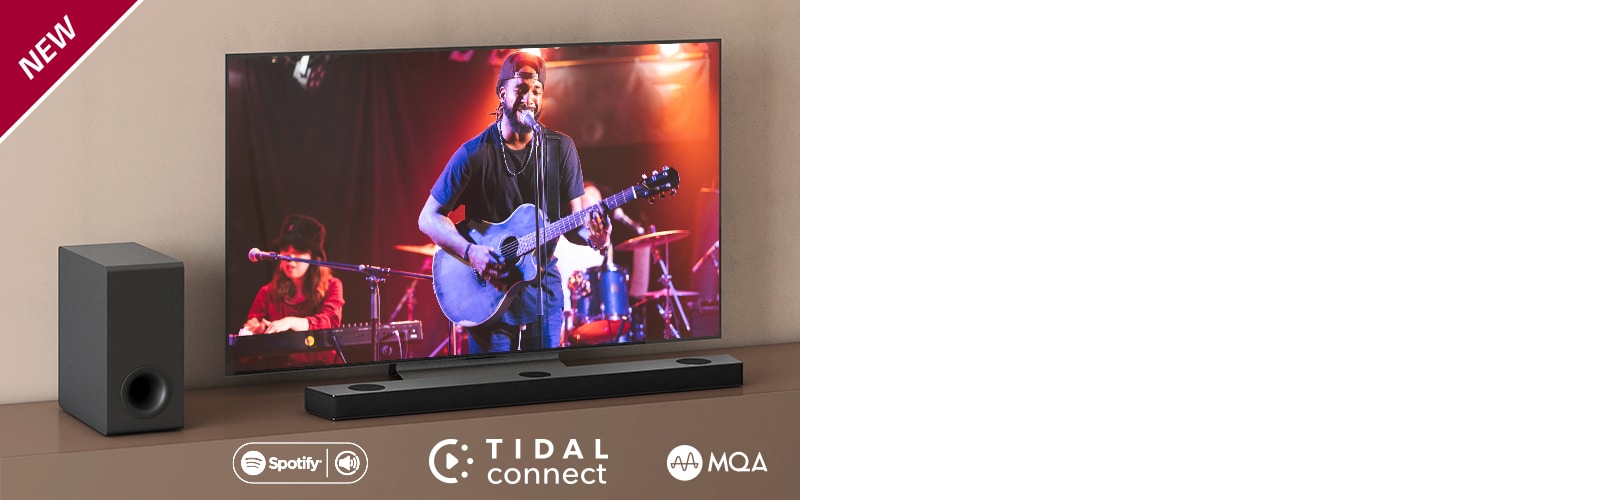 LG televizorius padėtas ant rudos lentynos, o „LG Sound Bar S90QY“ – priešais televizorių. Žemųjų dažnių garsiakalbis yra kairėje televizoriaus pusėje. Televizoriuje rodoma koncerto scena. Viršutiniame kairiajame kampe parodytas ženklas NEW.